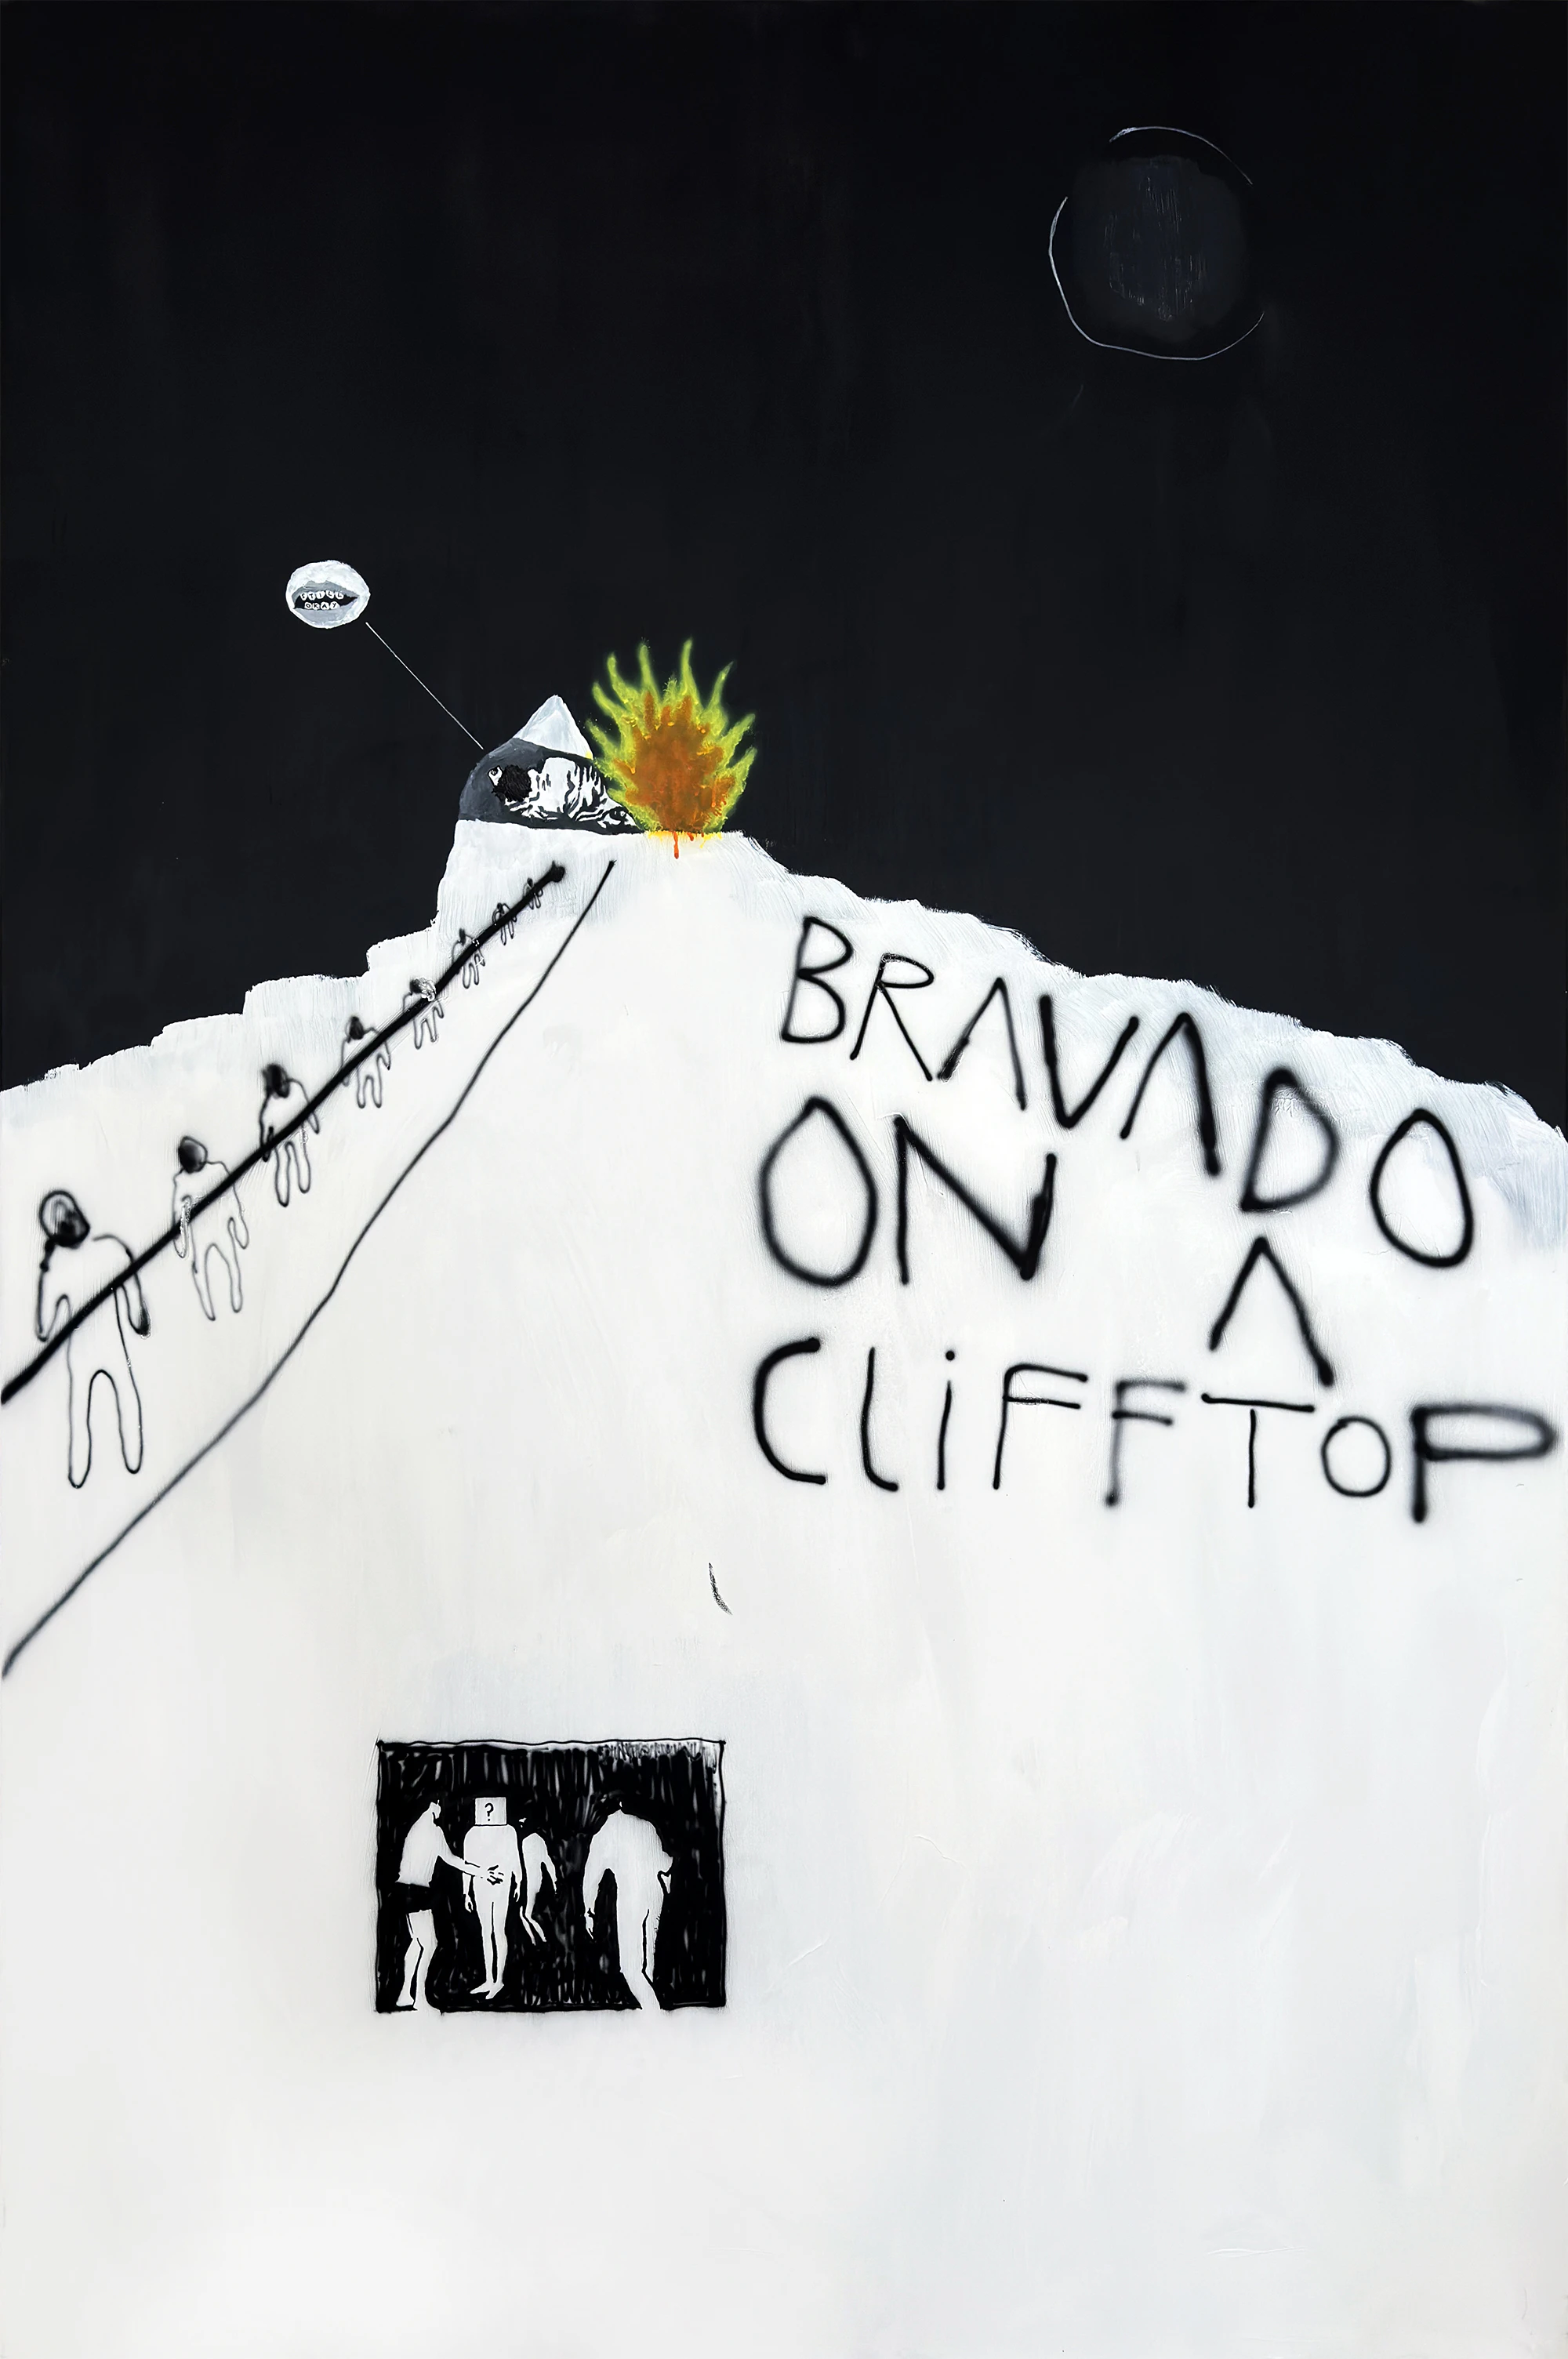 Bravado On A Clifftop 2